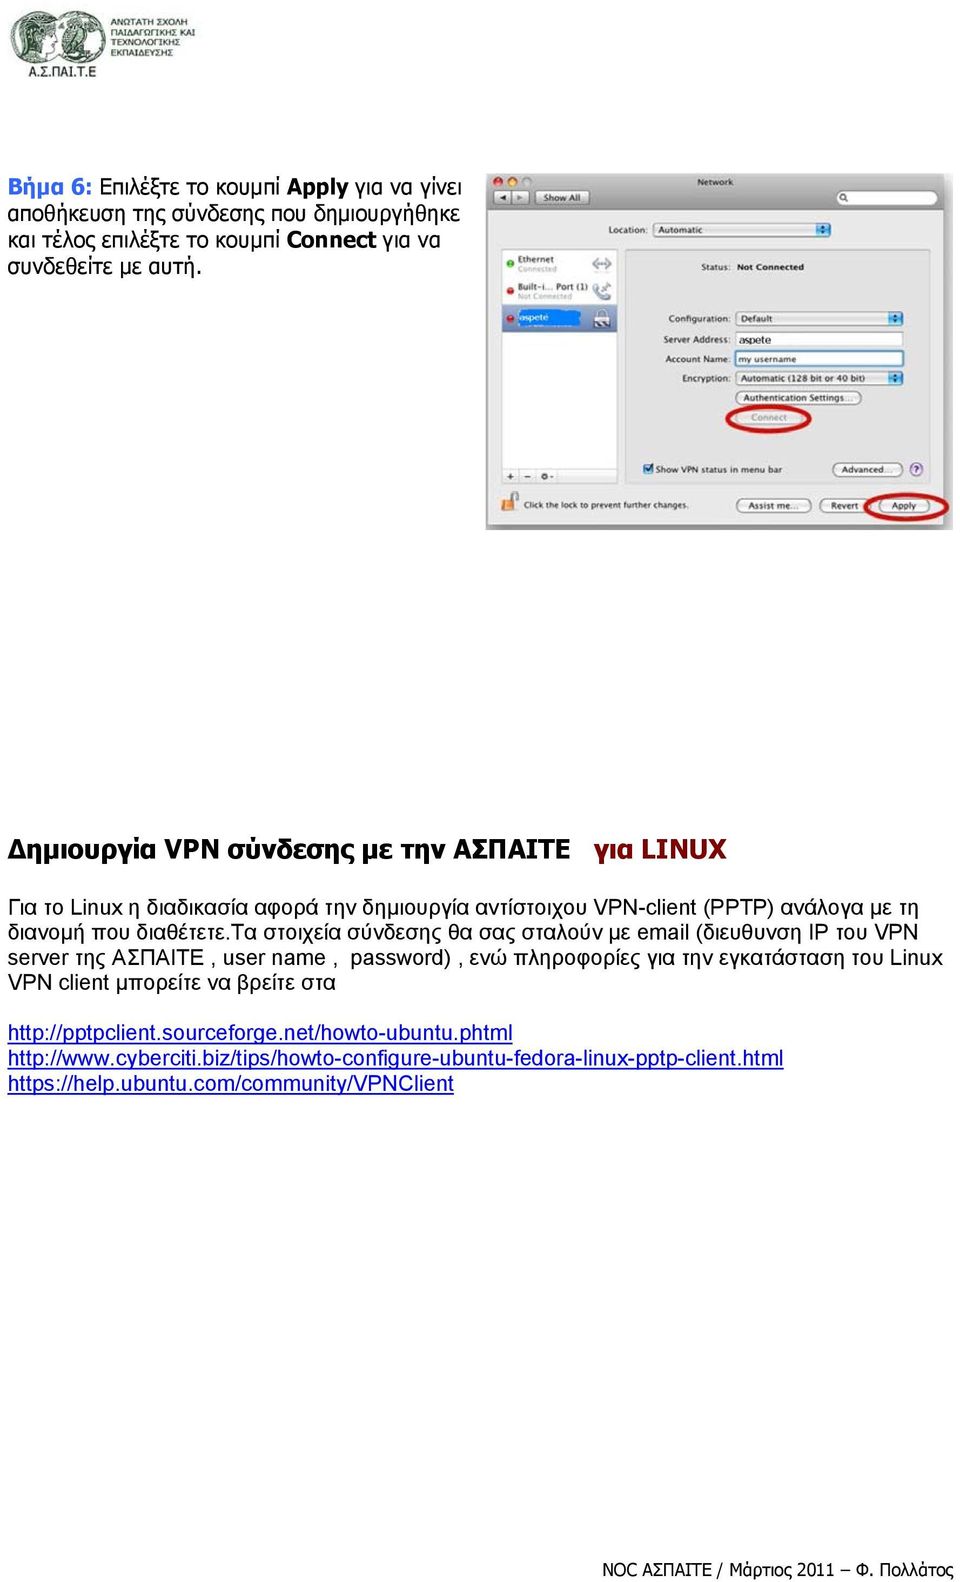 τα στοιχεία σύνδεσης θα σας σταλούν με email (διευθυνση IP του VPN server της ΑΣΠΑΙΤΕ, user name, password), ενώ πληροφορίες για την εγκατάσταση του Linux VPN client